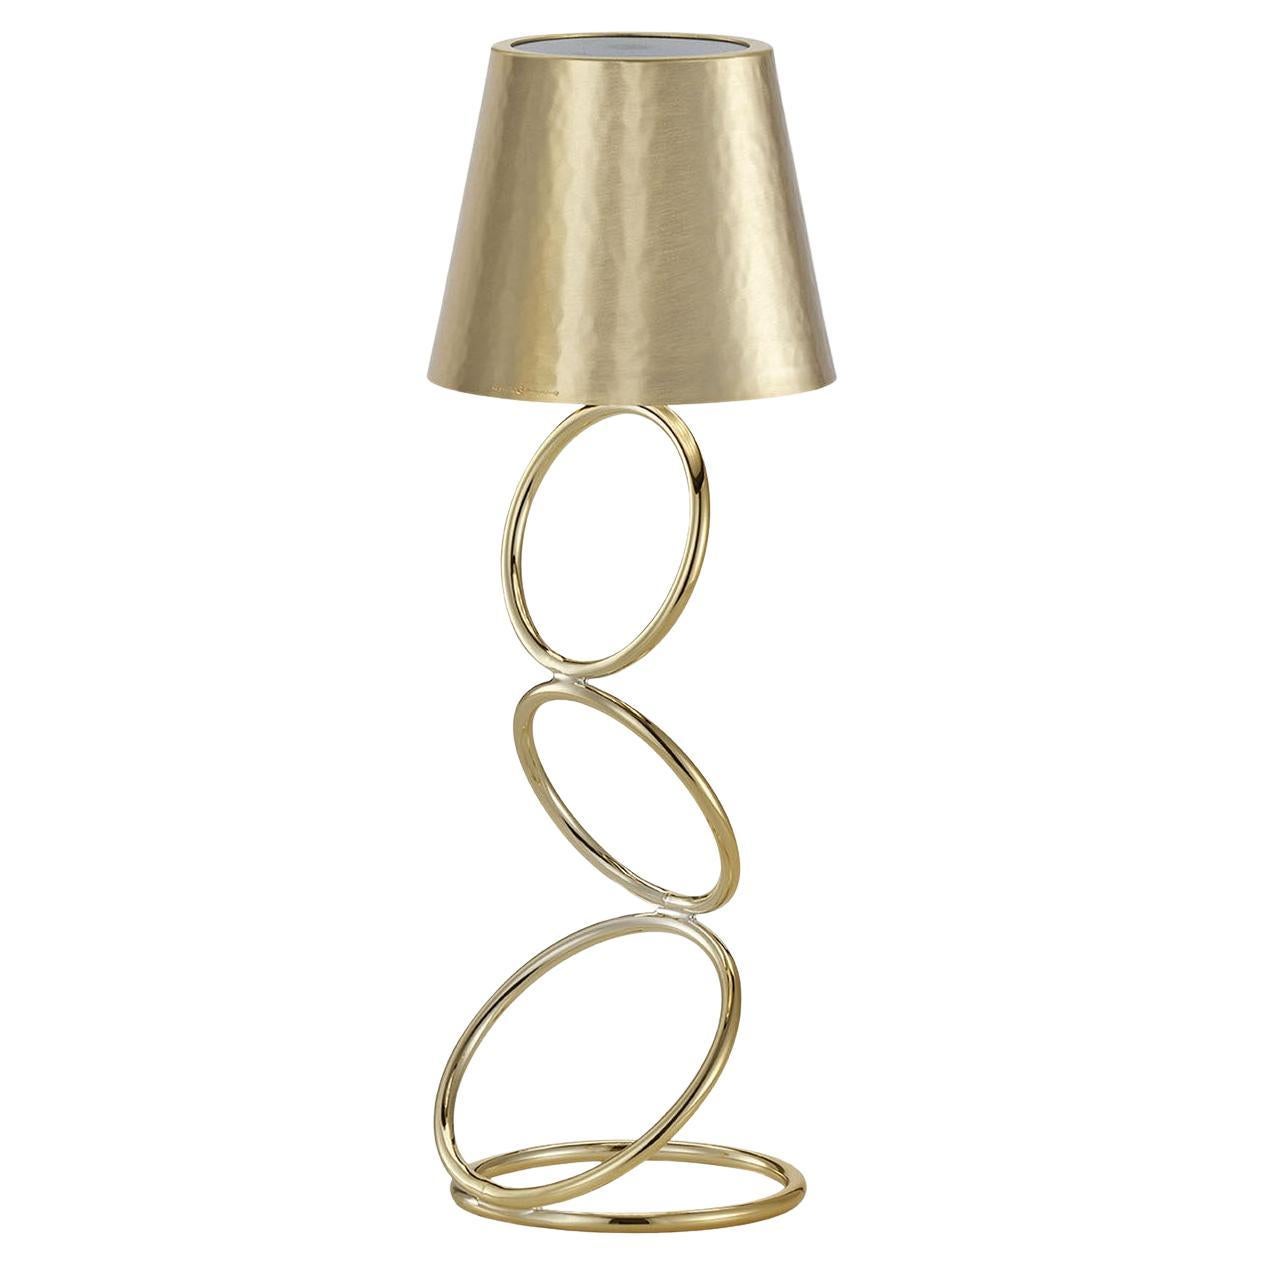 Goldene Lampe #4 von Itamar Harari